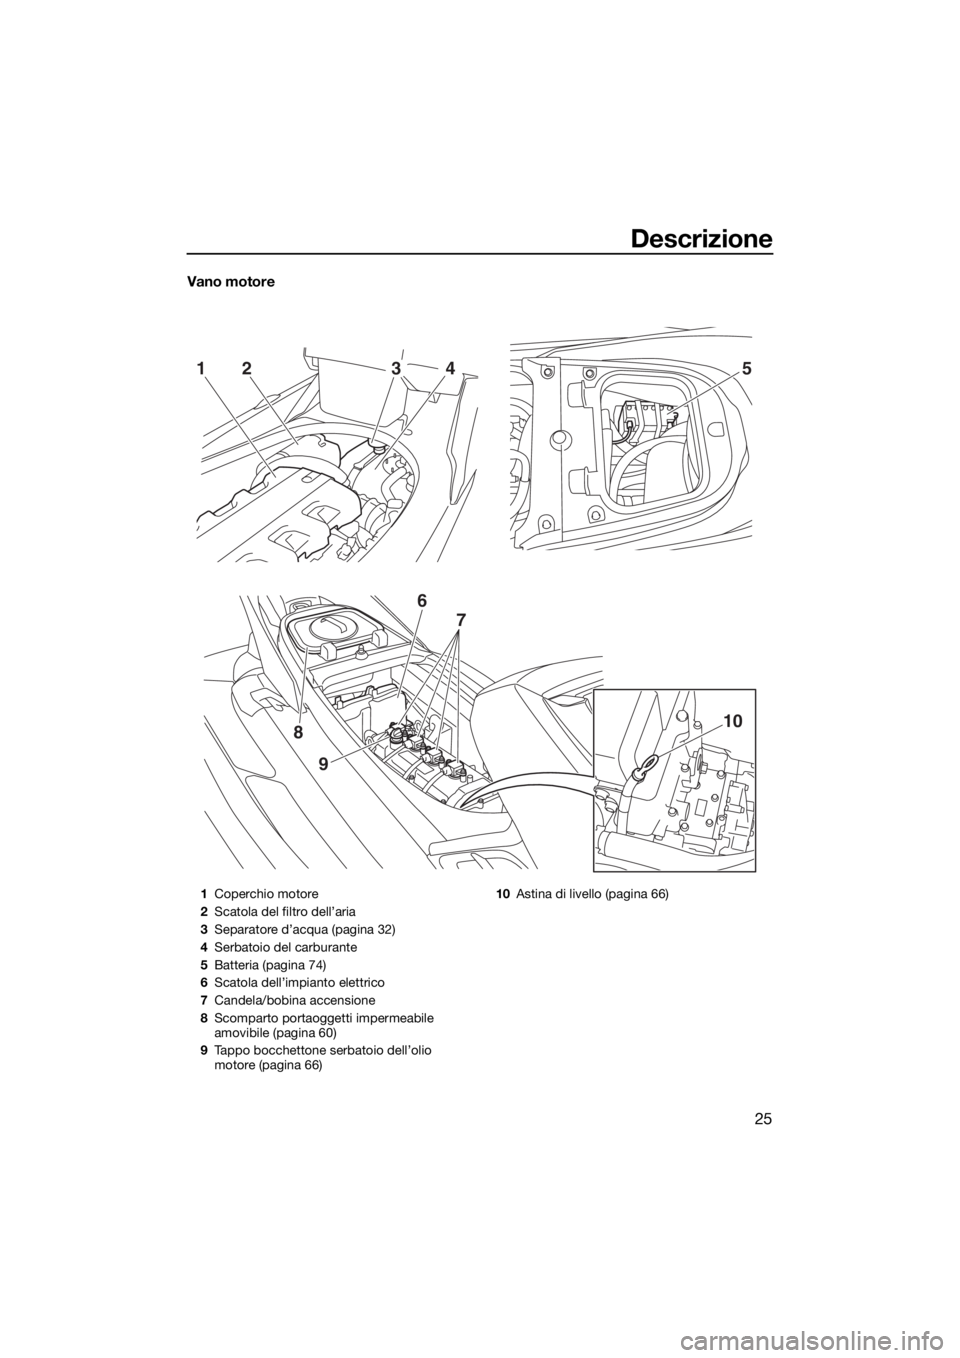 YAMAHA FX HO 2017  Manuale duso (in Italian) Descrizione
25
Vano motore
52143
9
8
6
7
10
1Coperchio motore
2Scatola del filtro dell’aria
3Separatore d’acqua (pagina 32)
4Serbatoio del carburante
5Batteria (pagina 74)
6Scatola dell’impianto